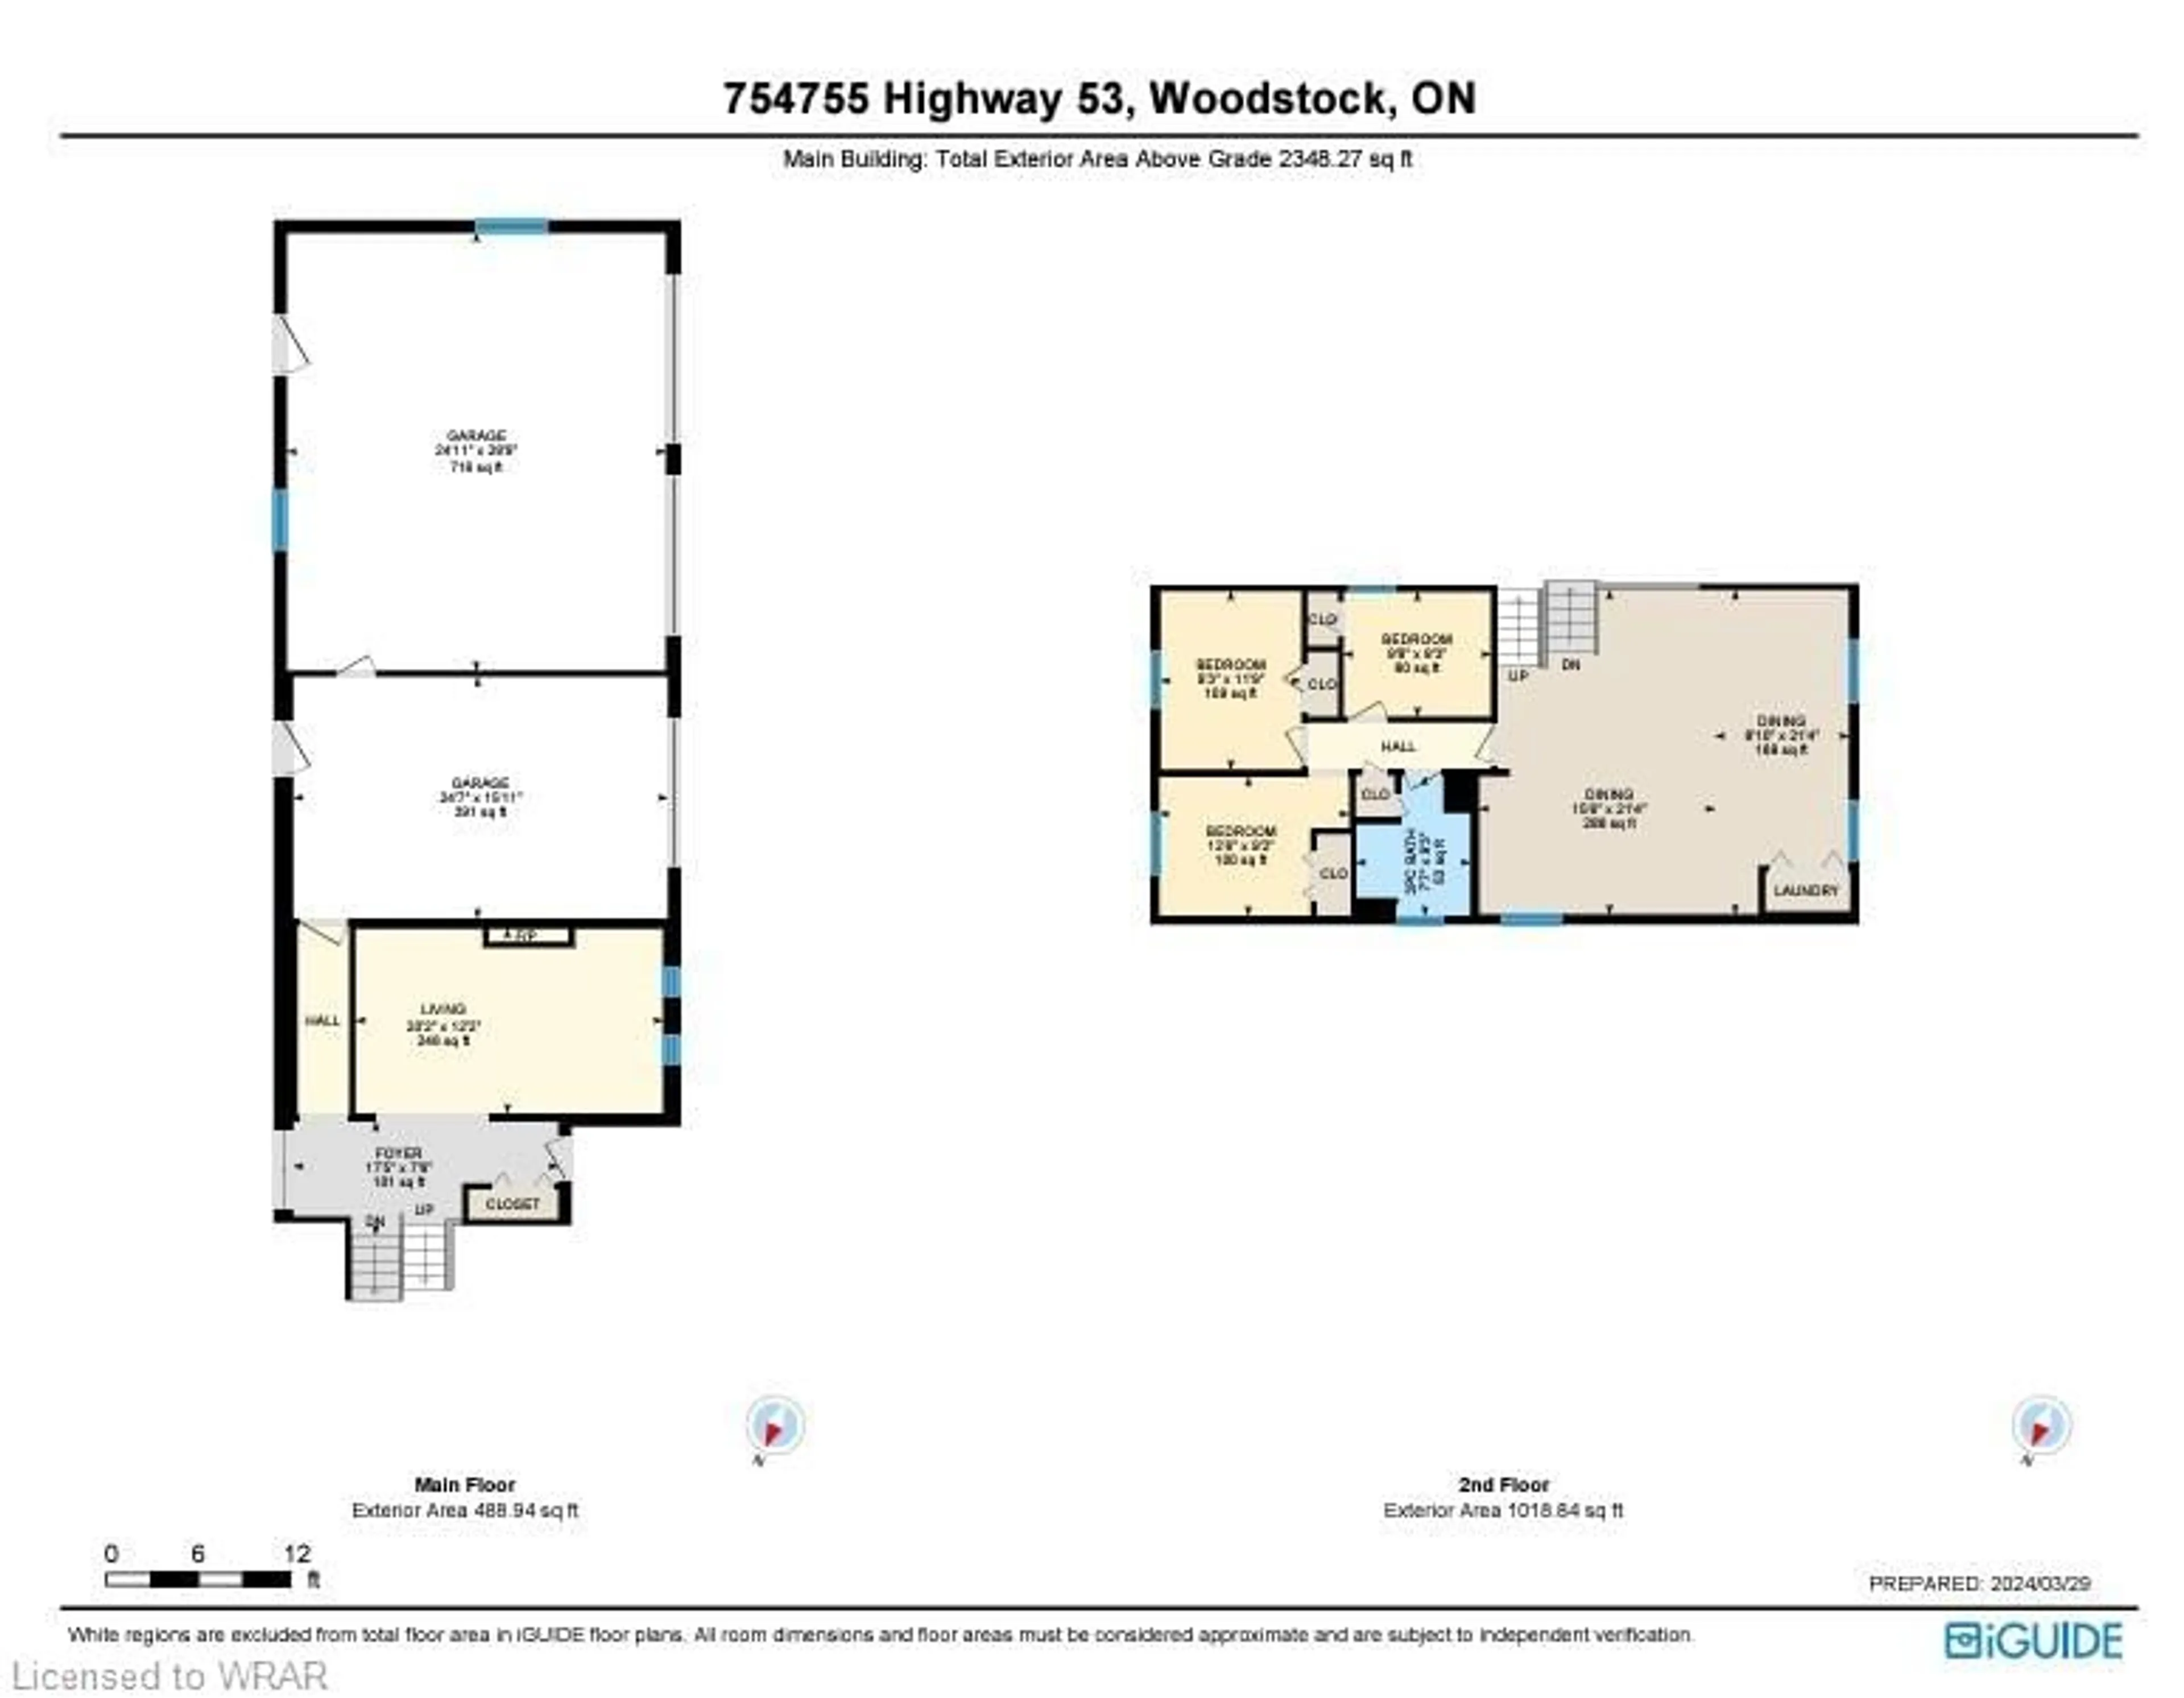 Floor plan for 754755 Highway 53 Hwy, Woodstock Ontario N4S 7W3